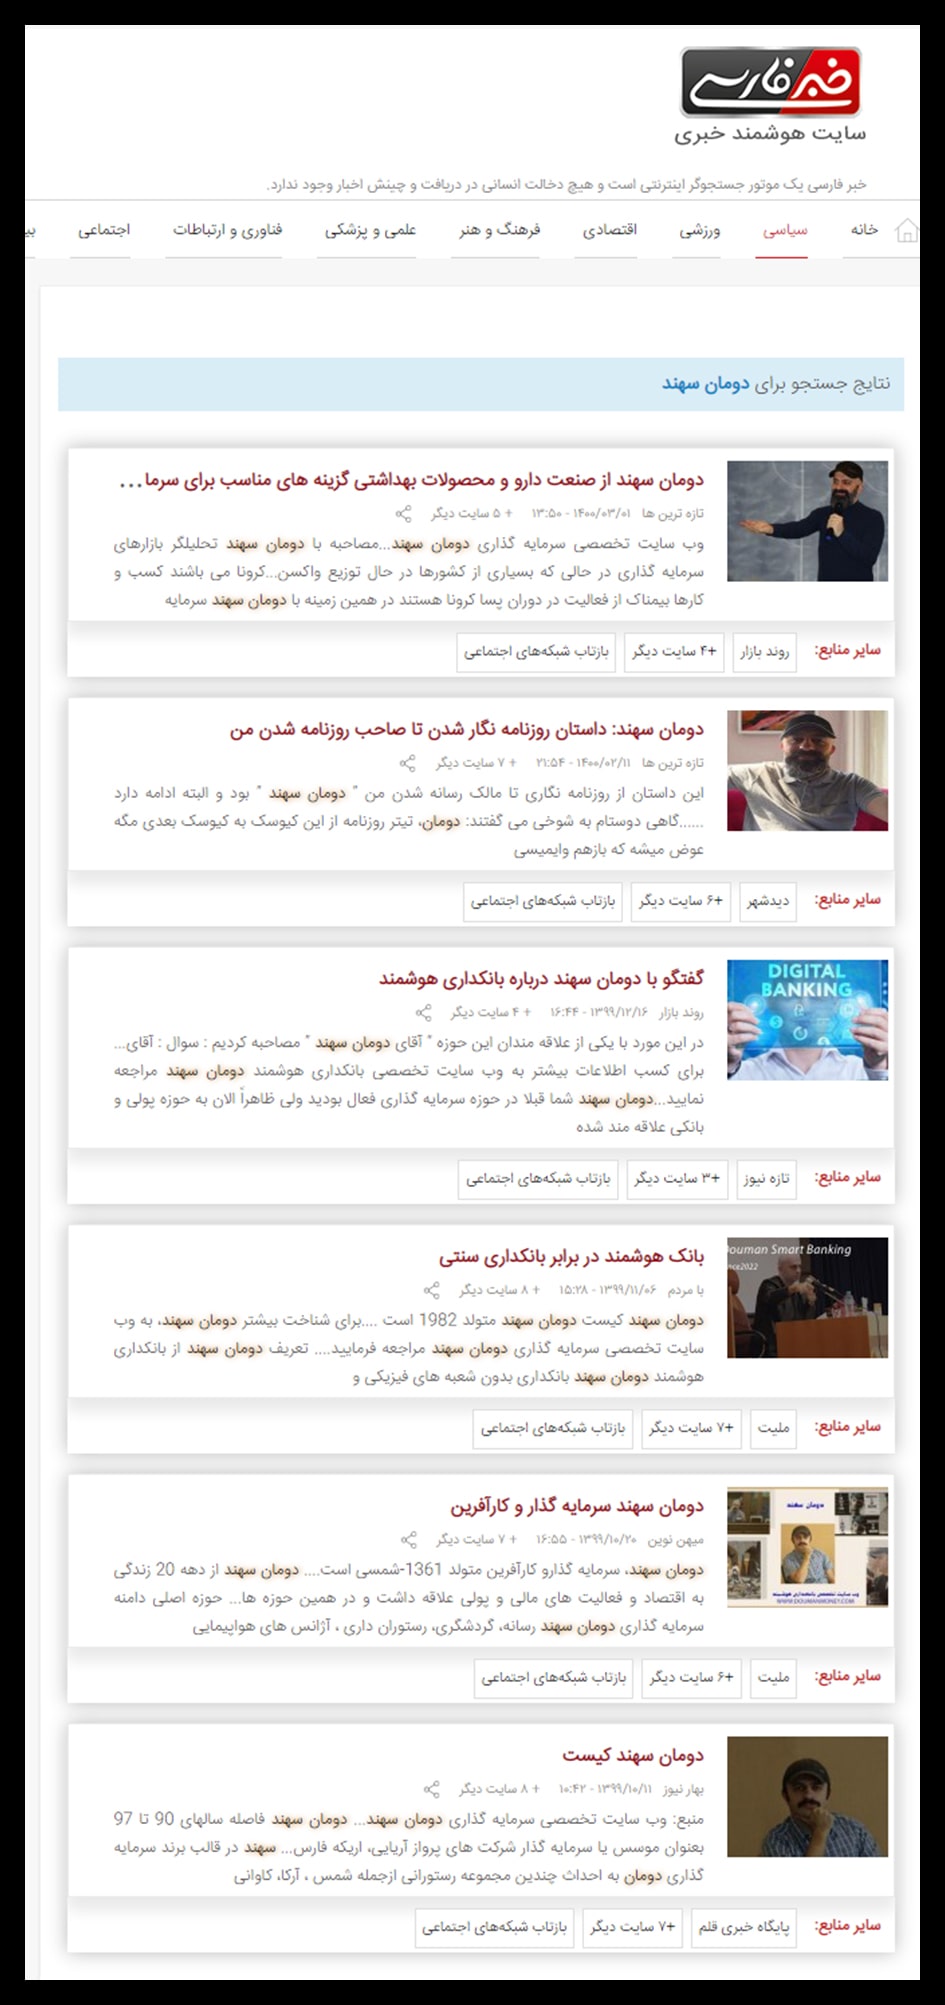 اخبار اخیر دومان سهند در سایت هوشمند خبری خبر فارسی